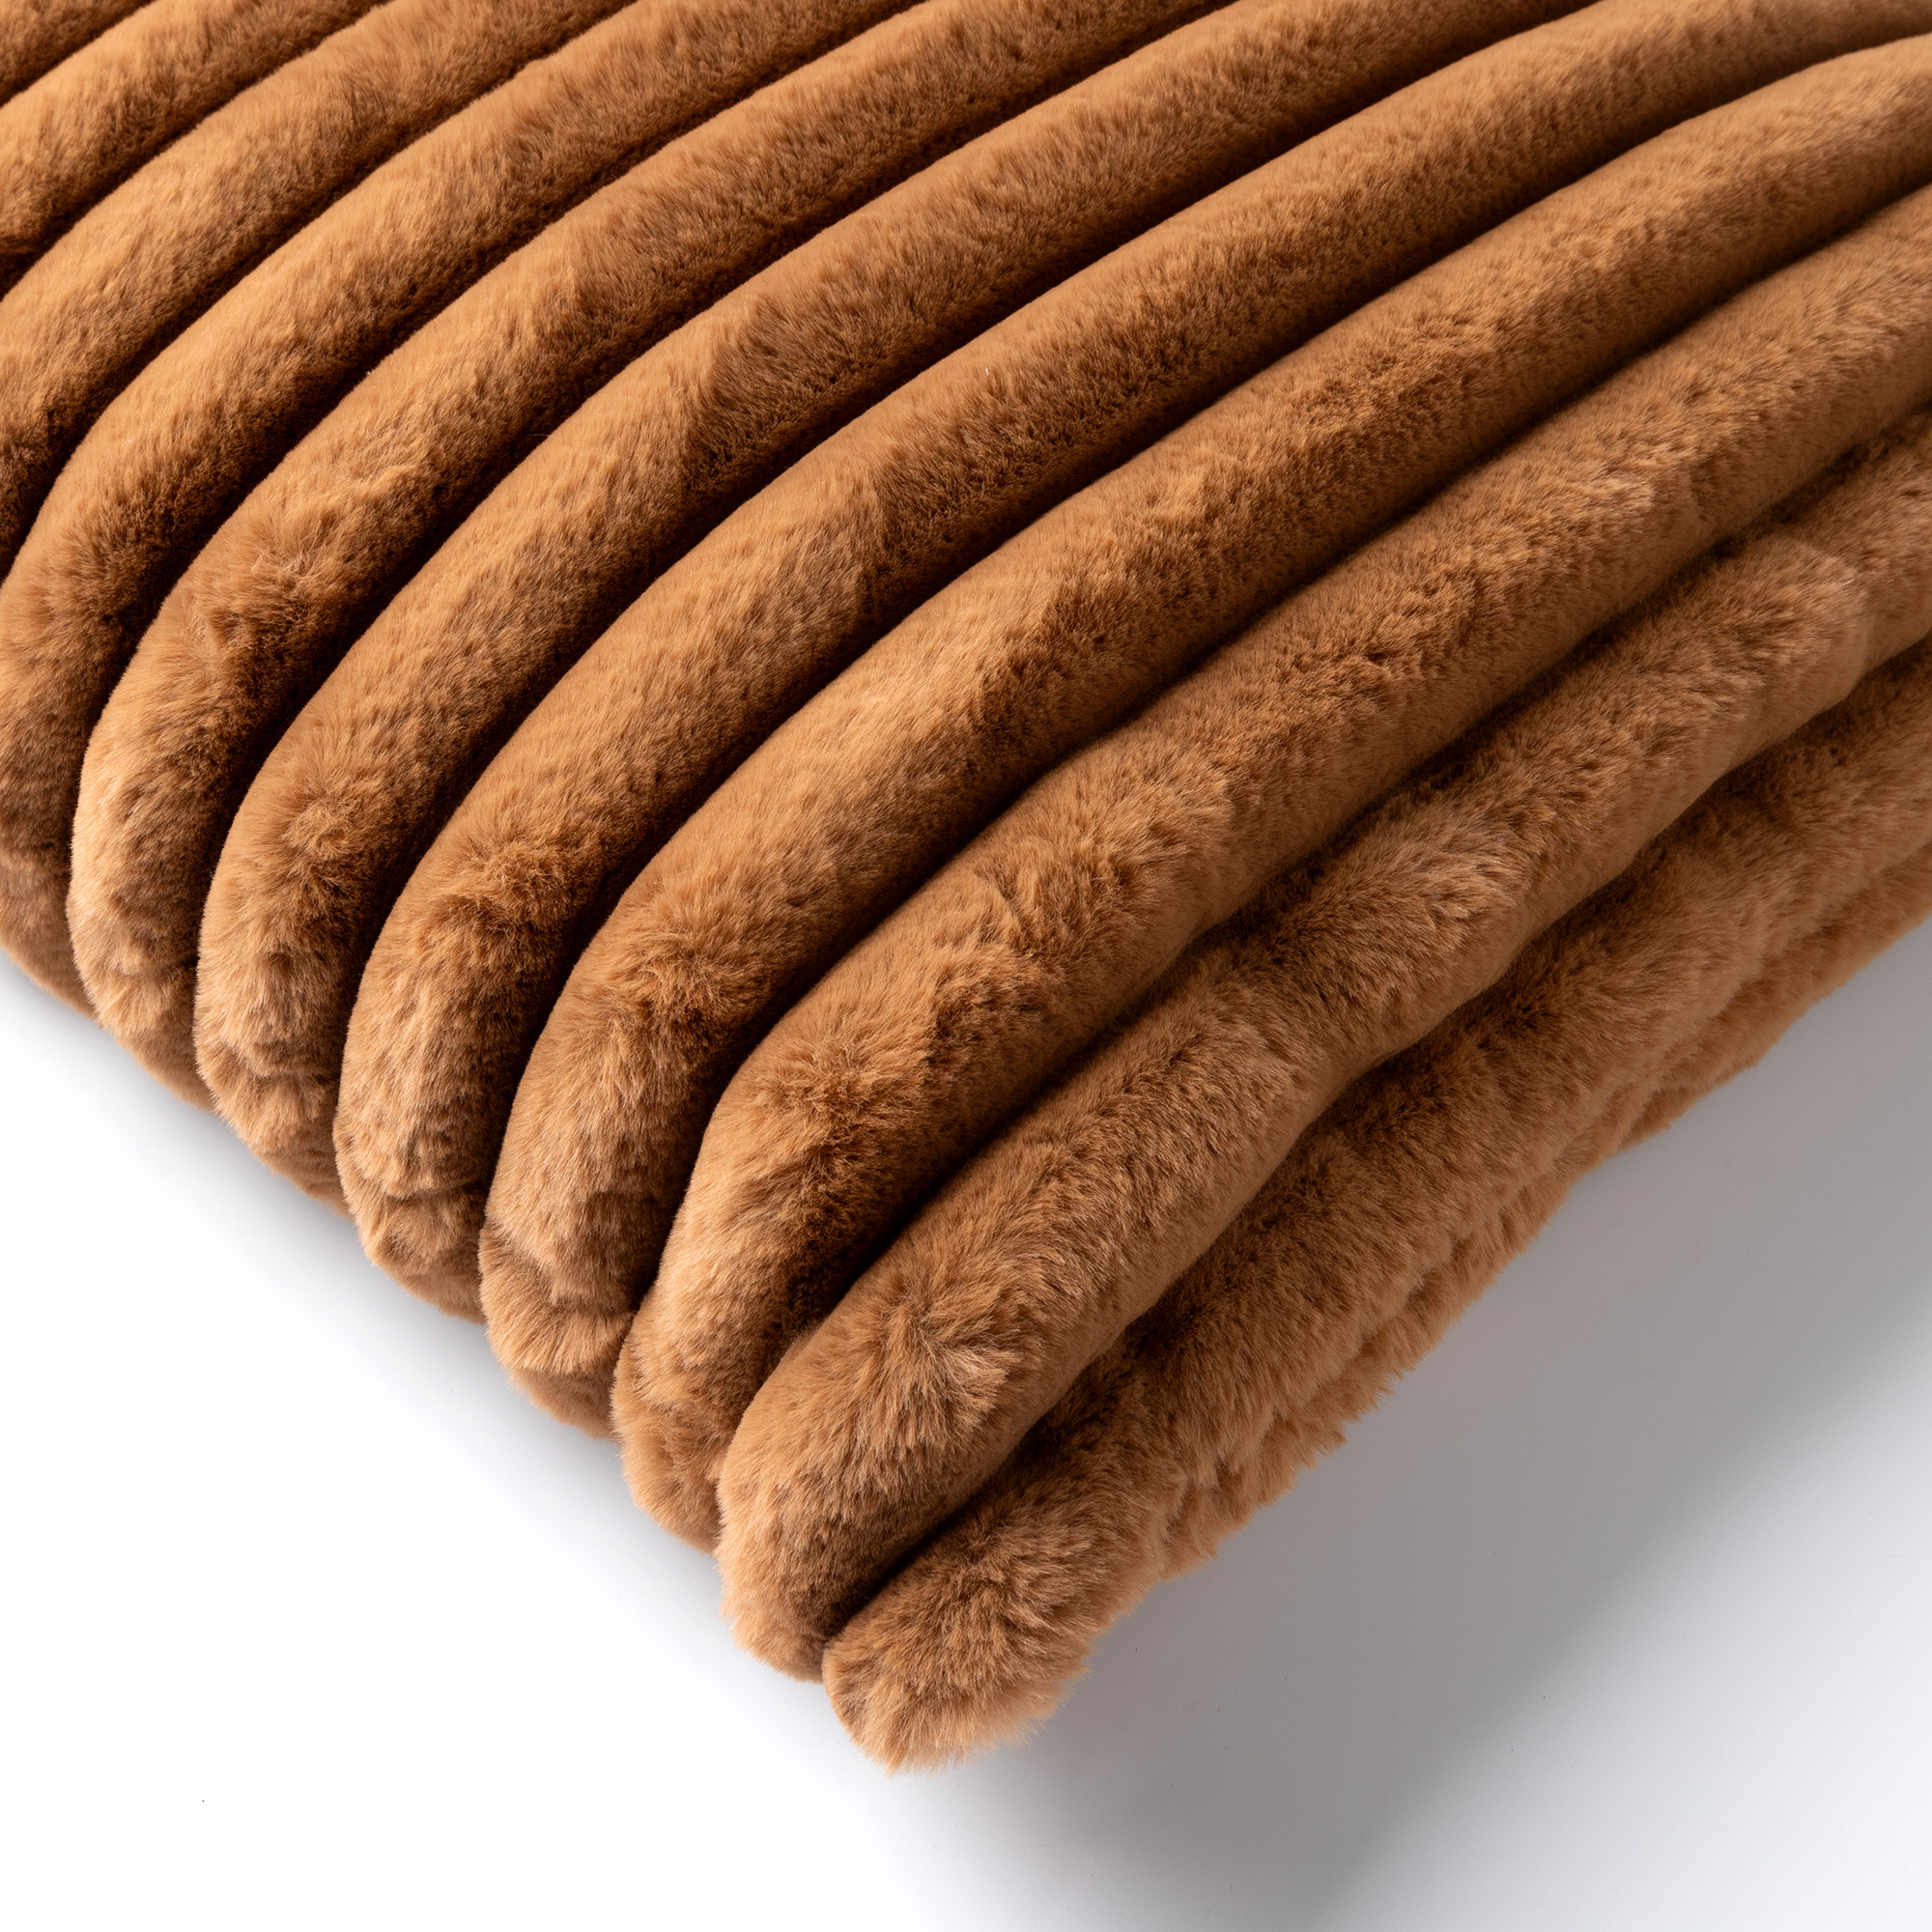 HAZEL - Kussenhoes 50x50 cm - effen kleur - strepen - heerlijk zacht - Tobacco Brown - bruin